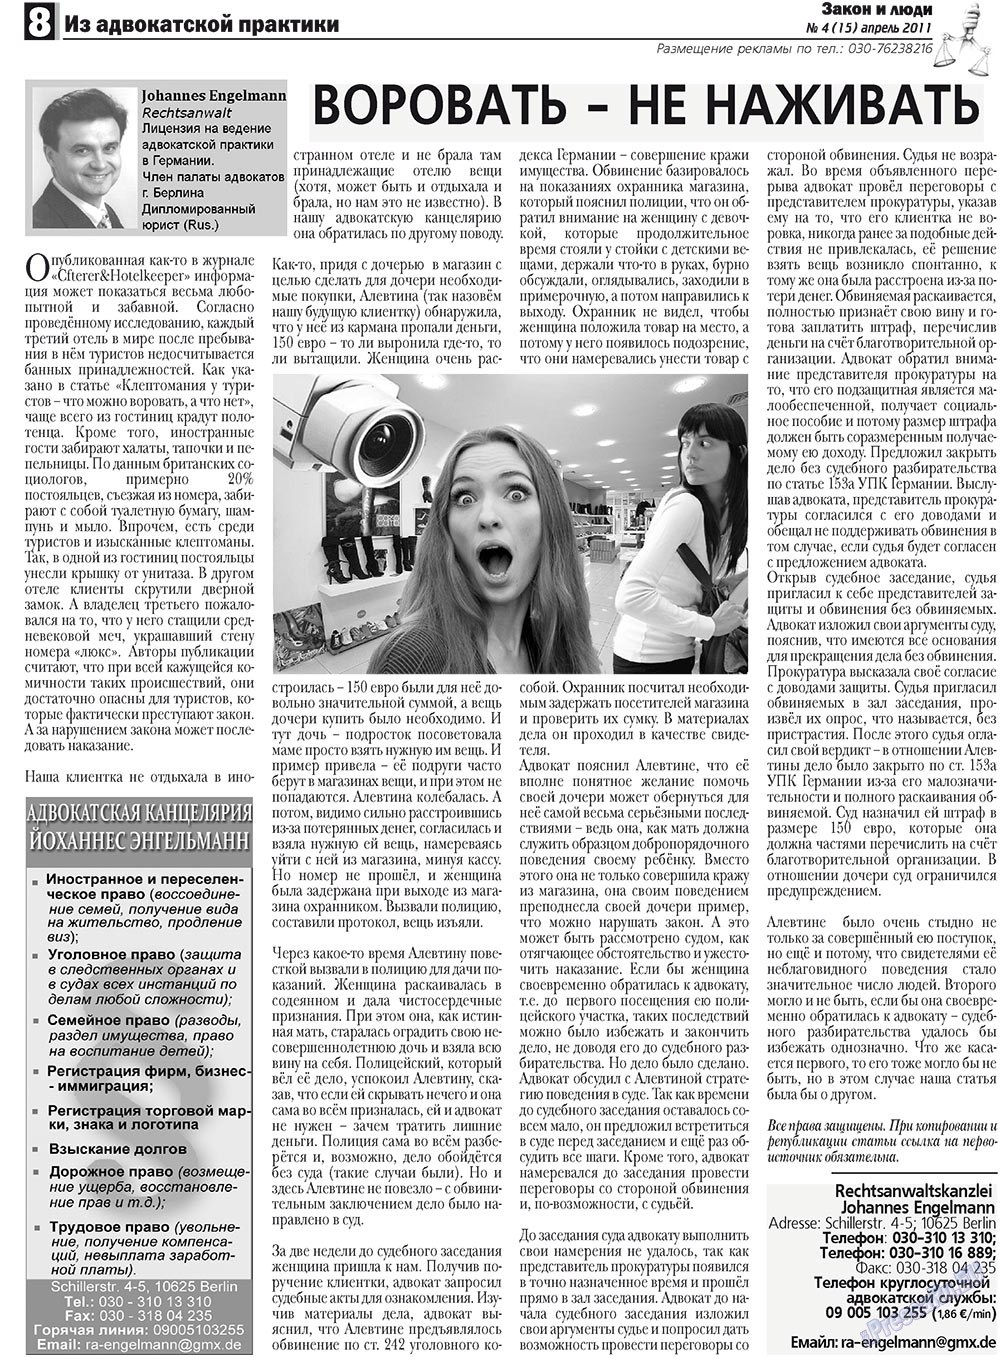 Закон и люди, газета. 2011 №4 стр.8